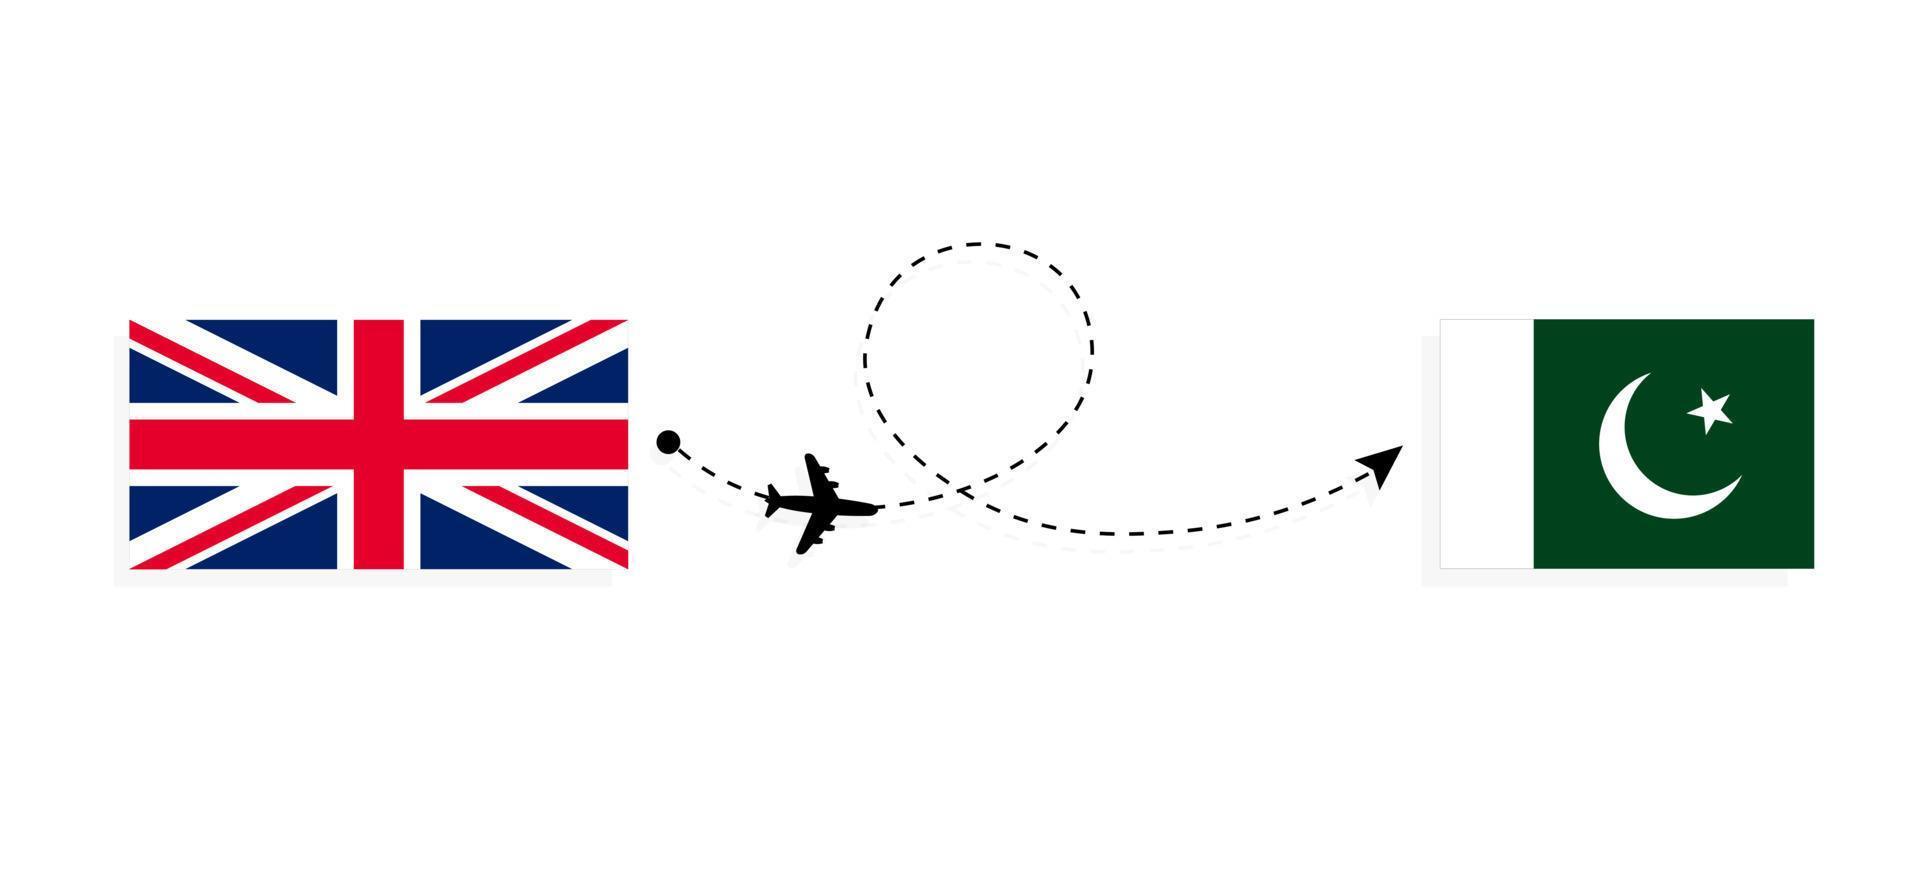 flyg och resor från Storbritannien till Pakistan med passagerarflygplan vektor